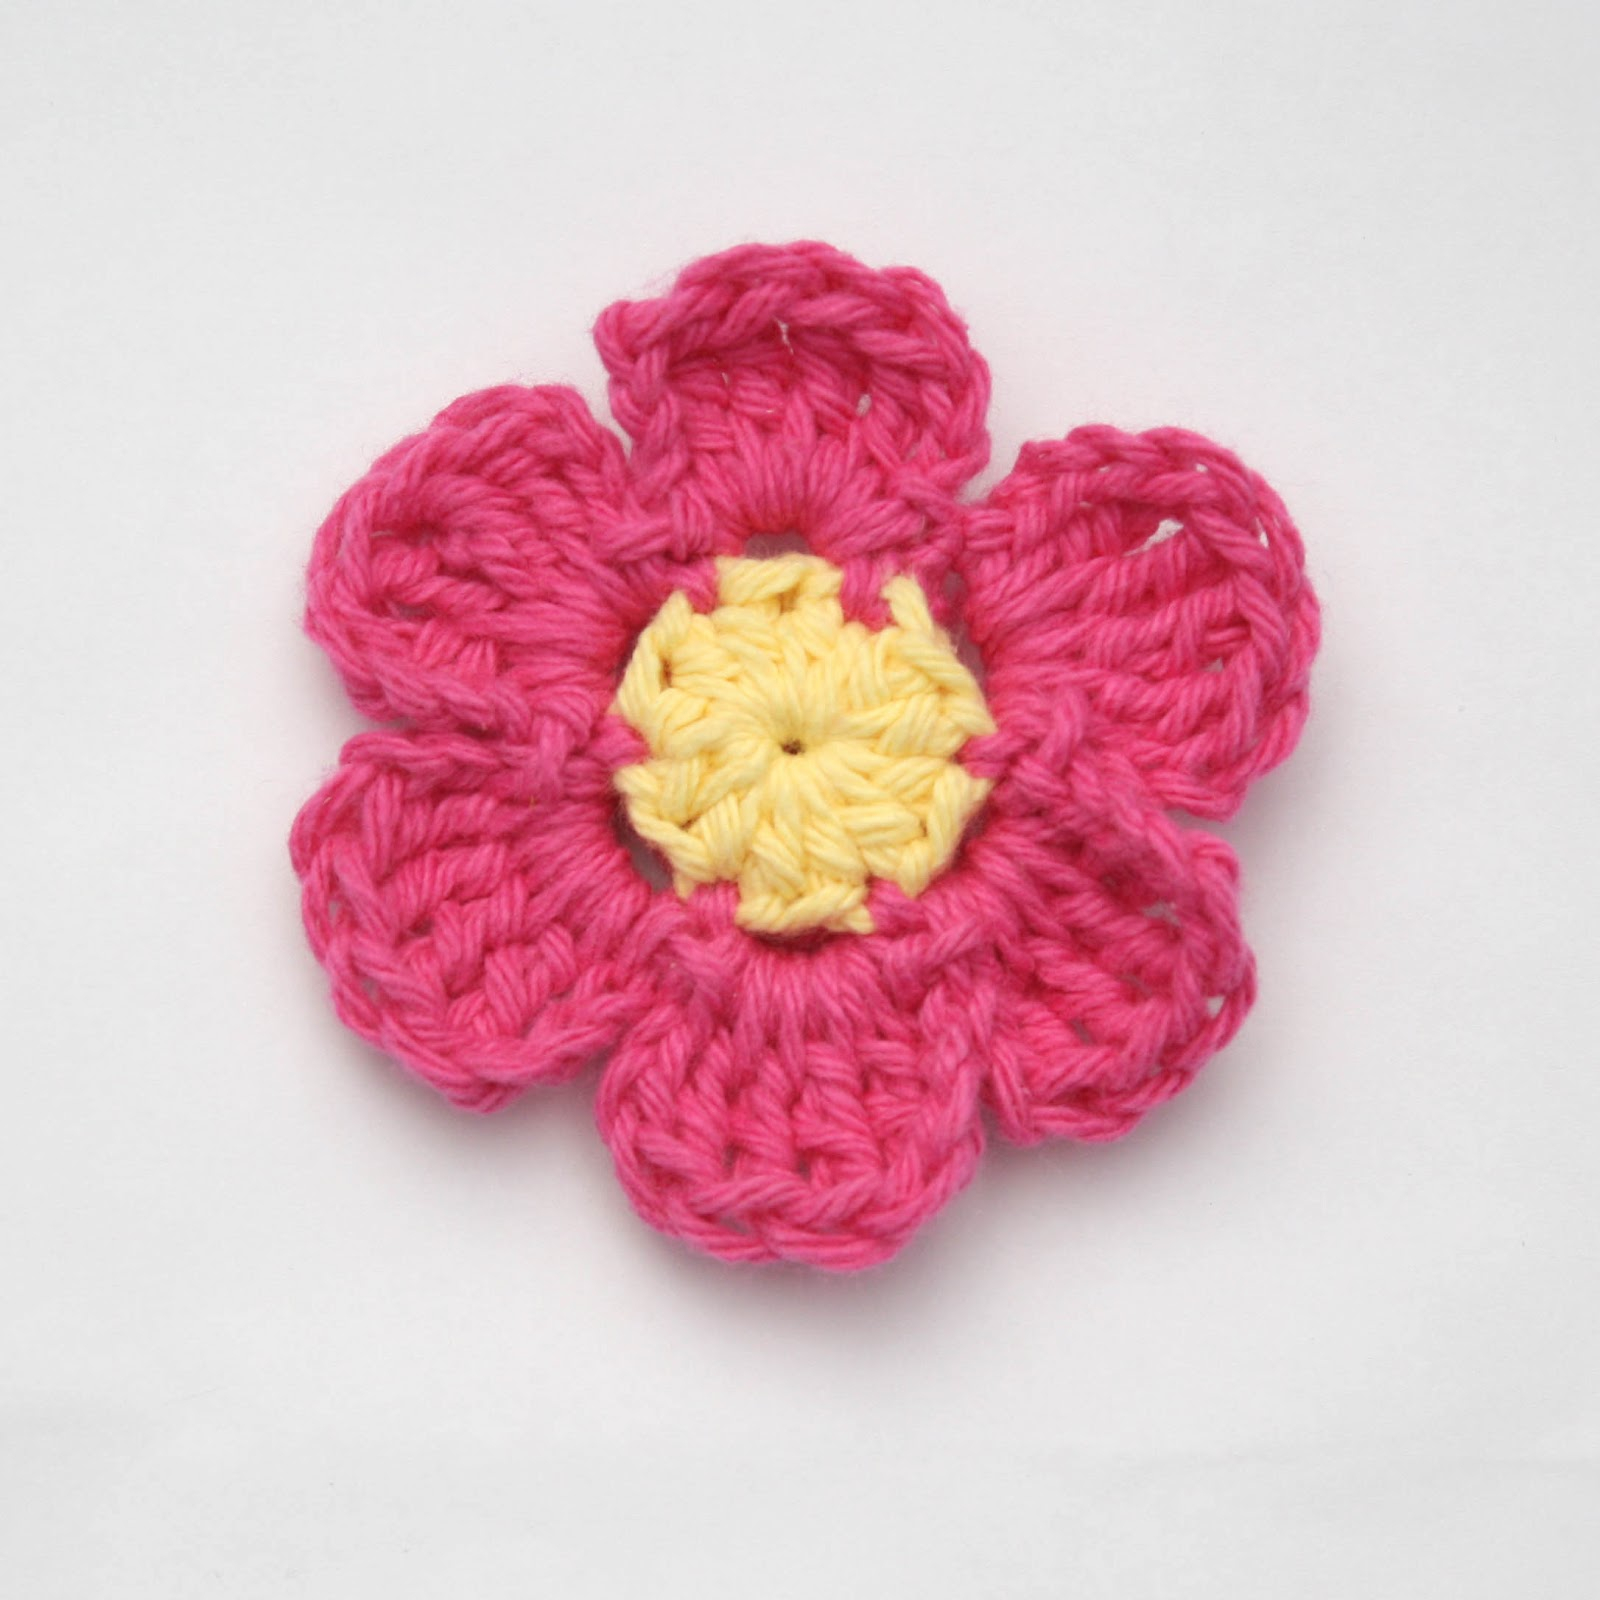 Crochet Sweet Pea Flower Pattern Sweet Pea Flower